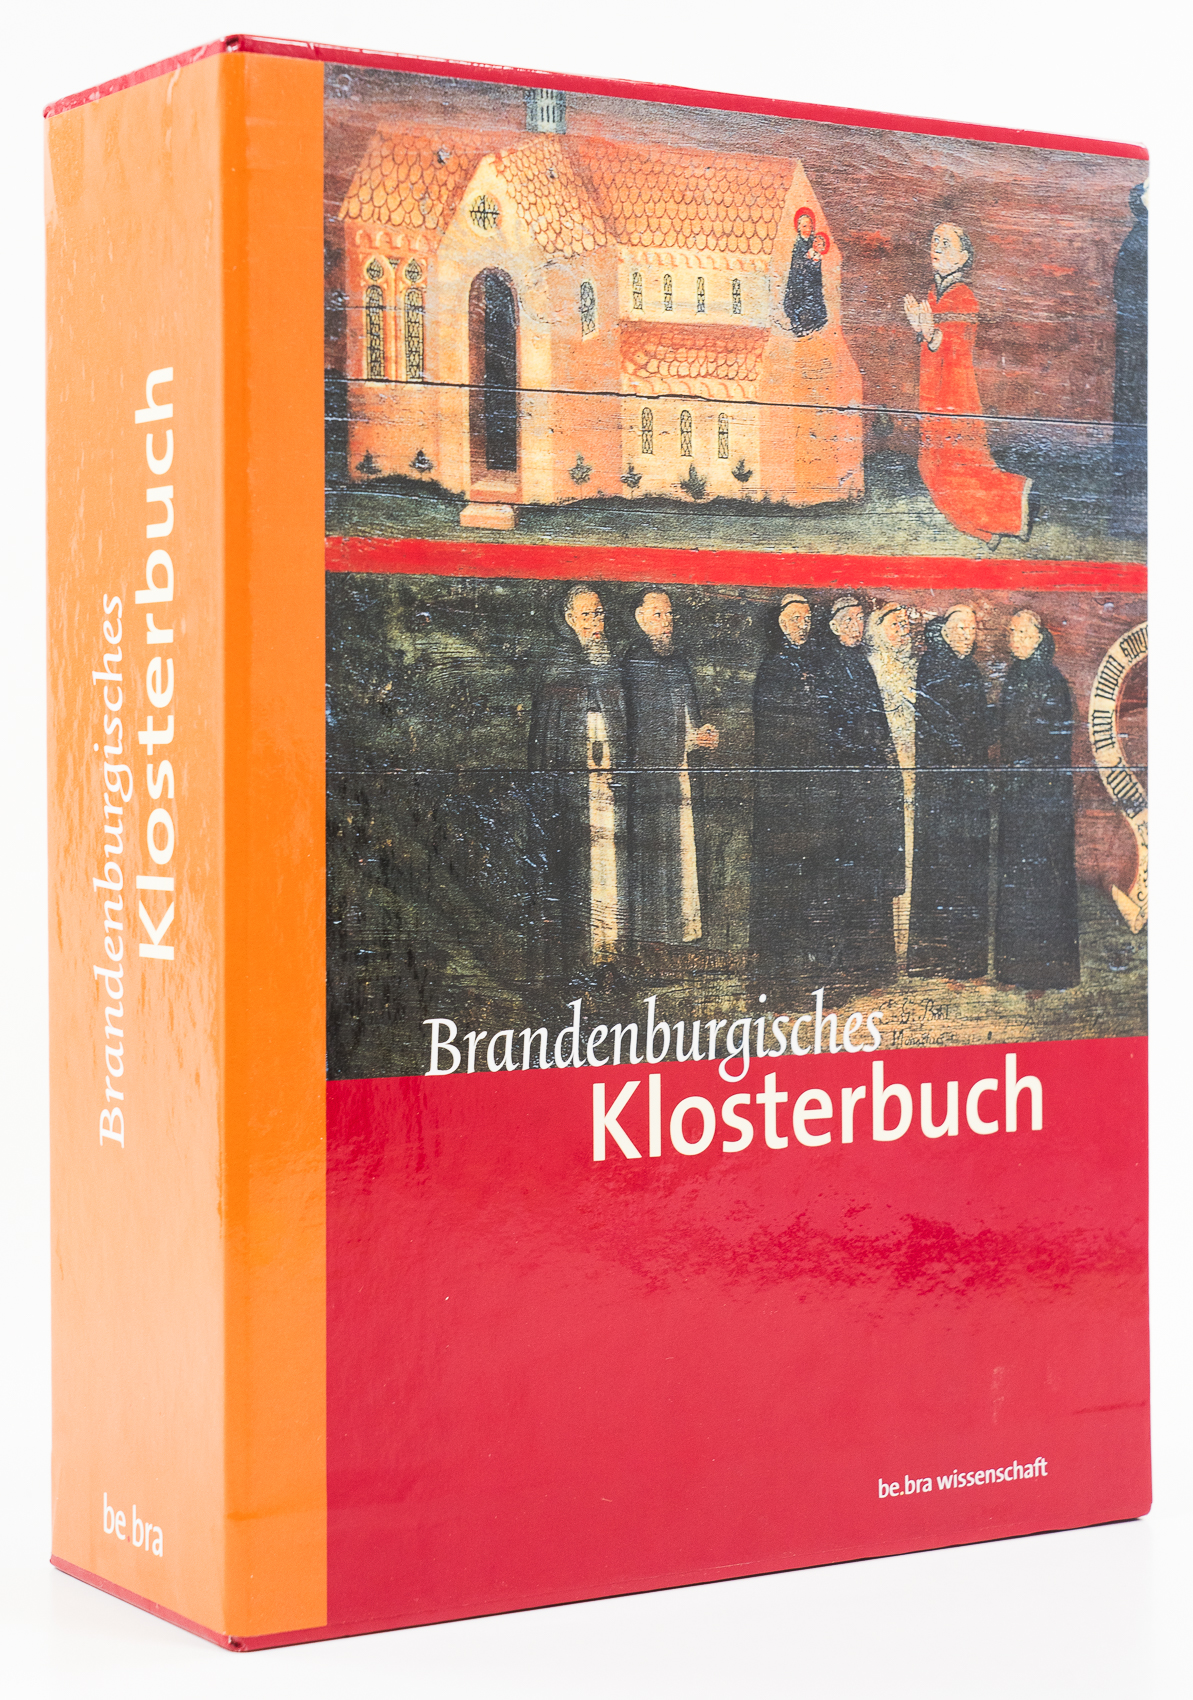 Brandenburgisches Klosterbuch. Handbuch der Klöster, Stifte und Kommenden bis zur Mitte des 16. Jahrhunderts. - [2 Bände]. - - Heimann, Heinz-Dieter et al. (Hgg.)